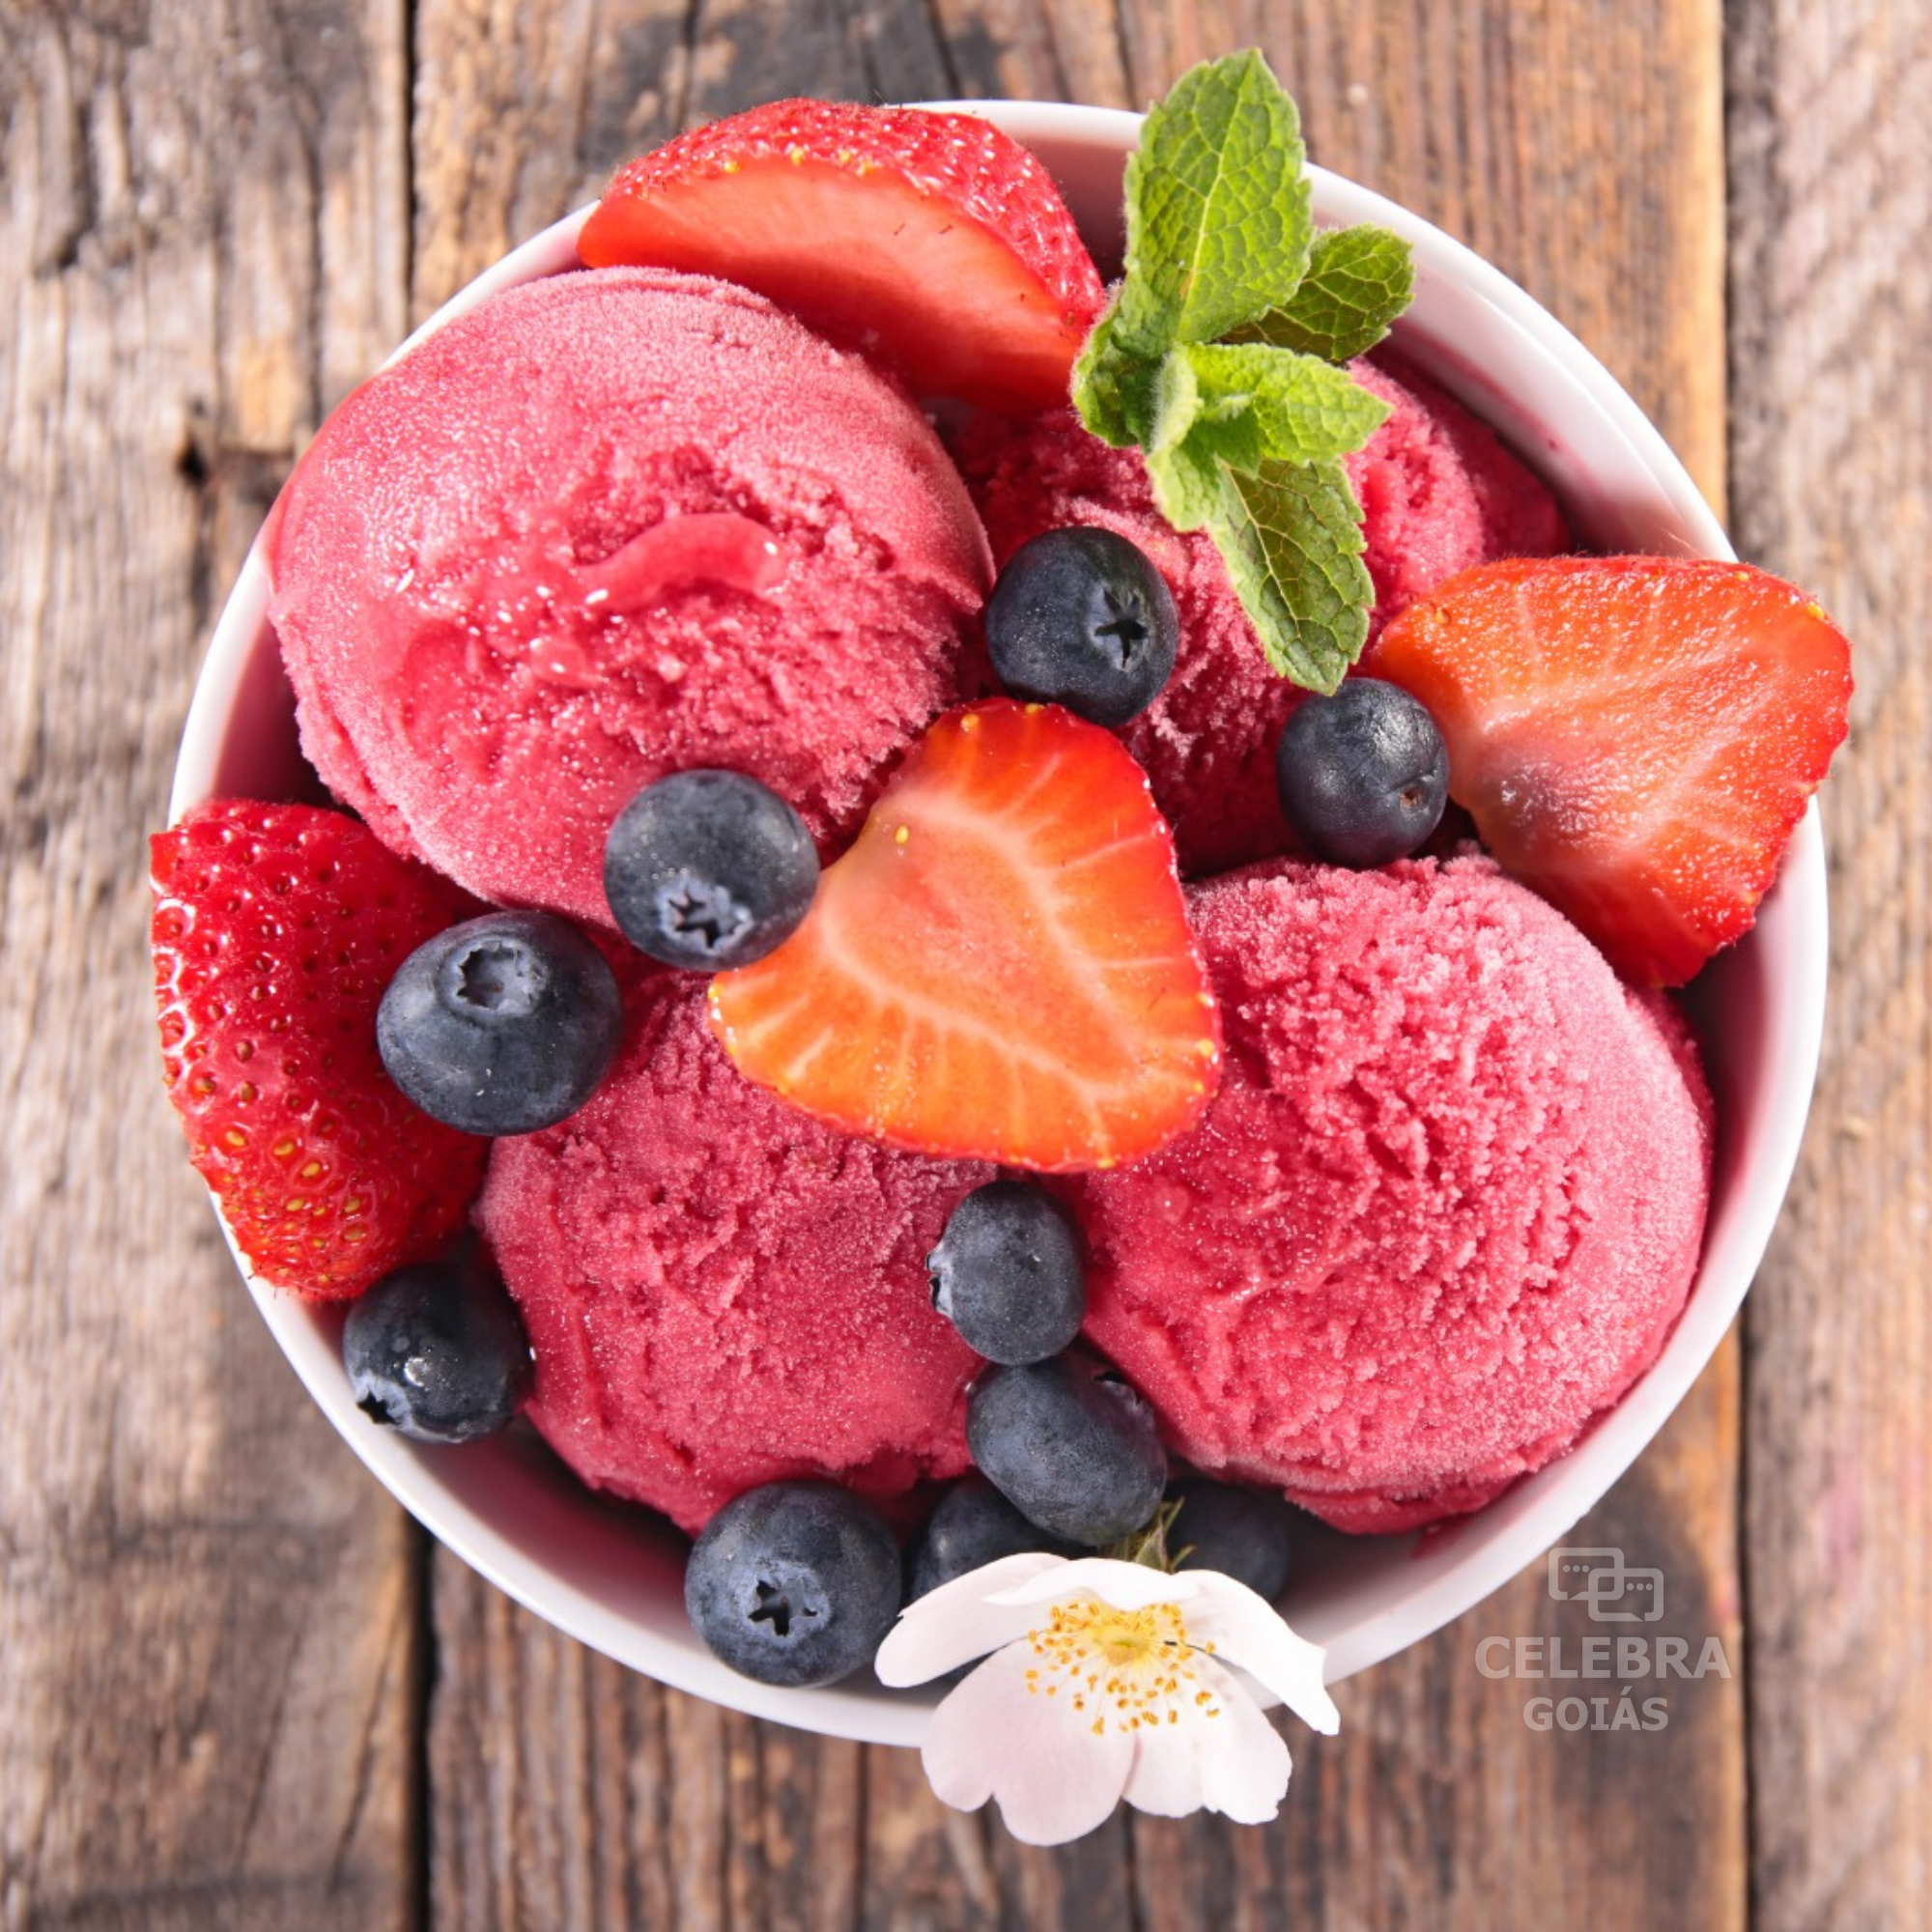 Saboroso e nutritivo: conheça alguns benefícios do sorvete